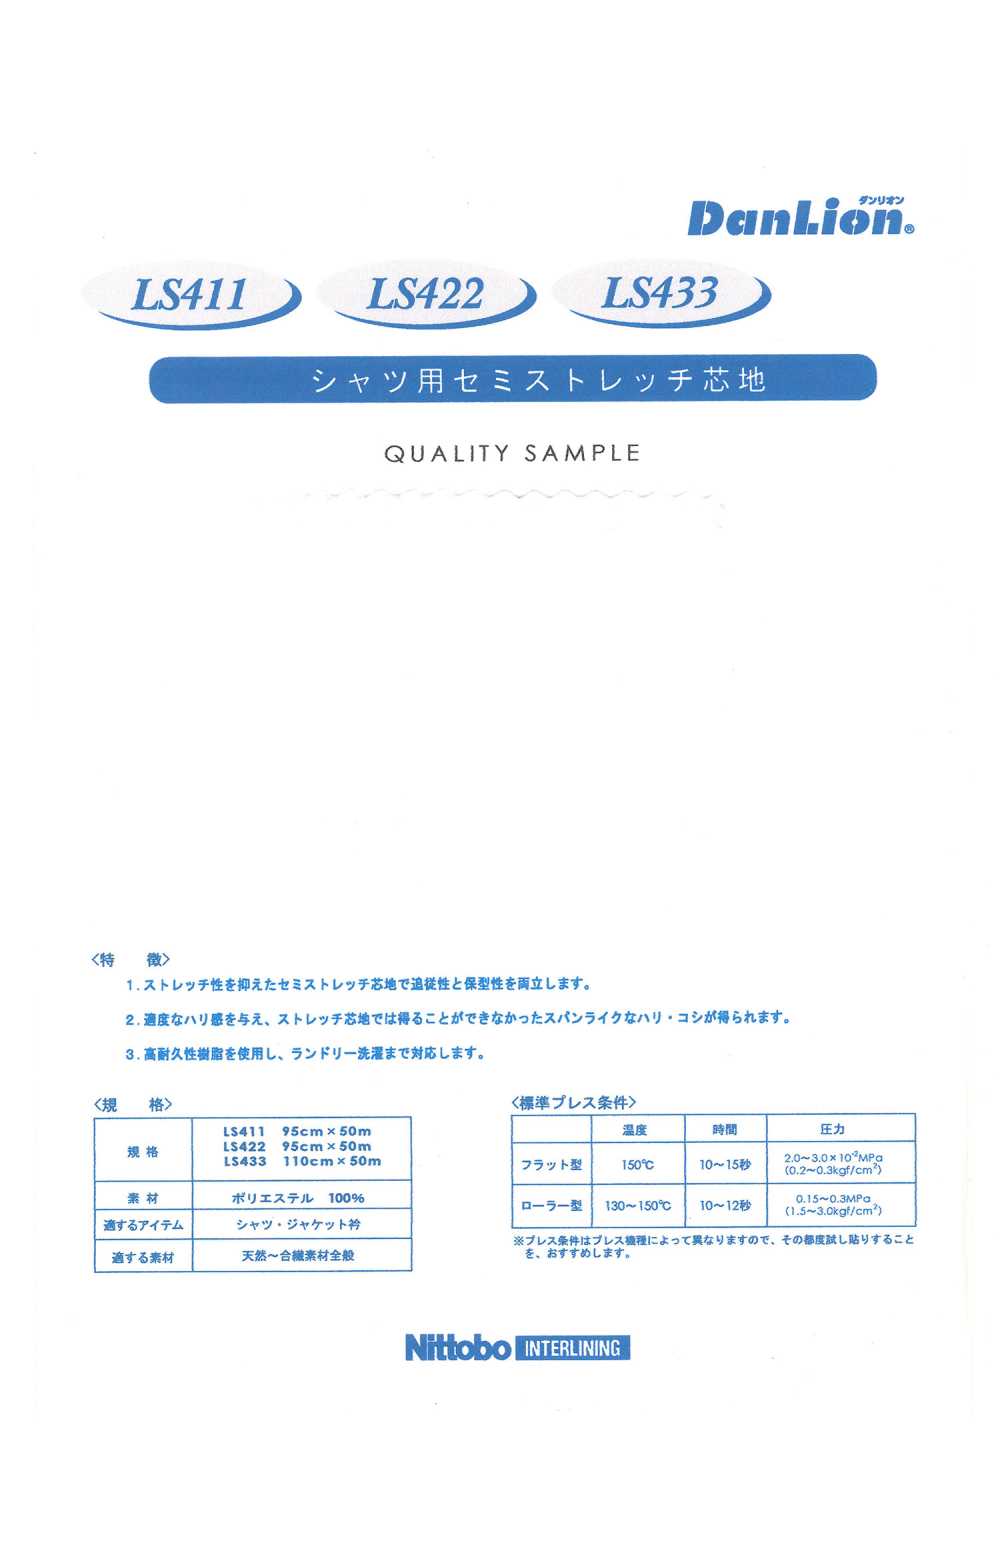 LS411/422/433SAMPLE Sample Card